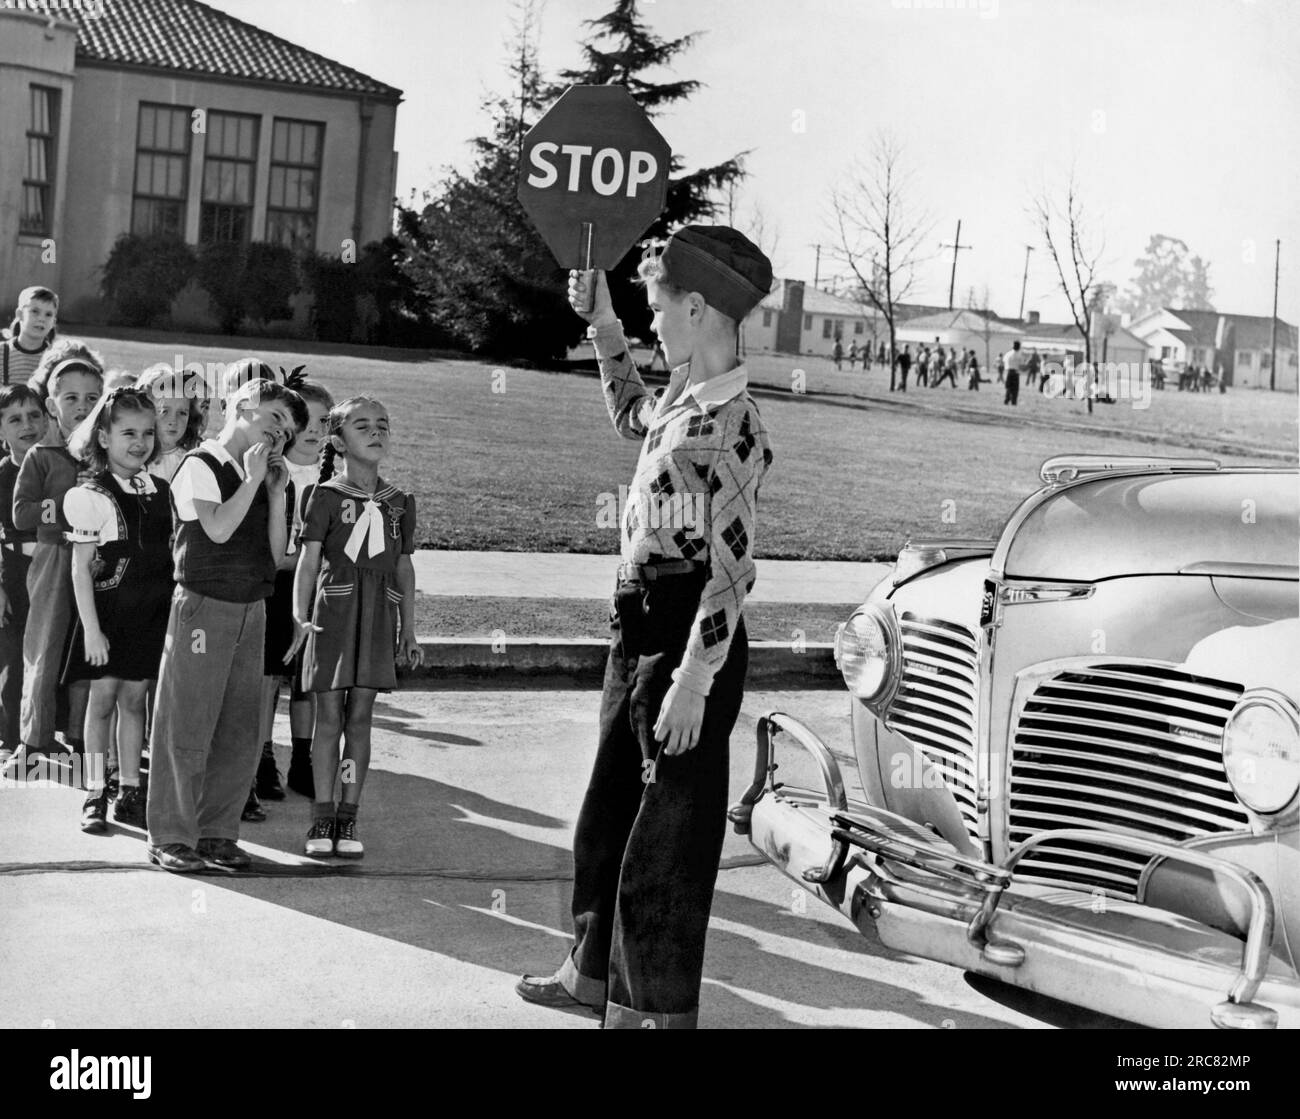 Vereinigte Staaten: c. 1948 Ein Schülerlotse hält sein Schild hoch, so dass die jüngeren Kinder die Straße nicht überqueren, bis er ihnen das Laufschild gegeben hat. Stockfoto